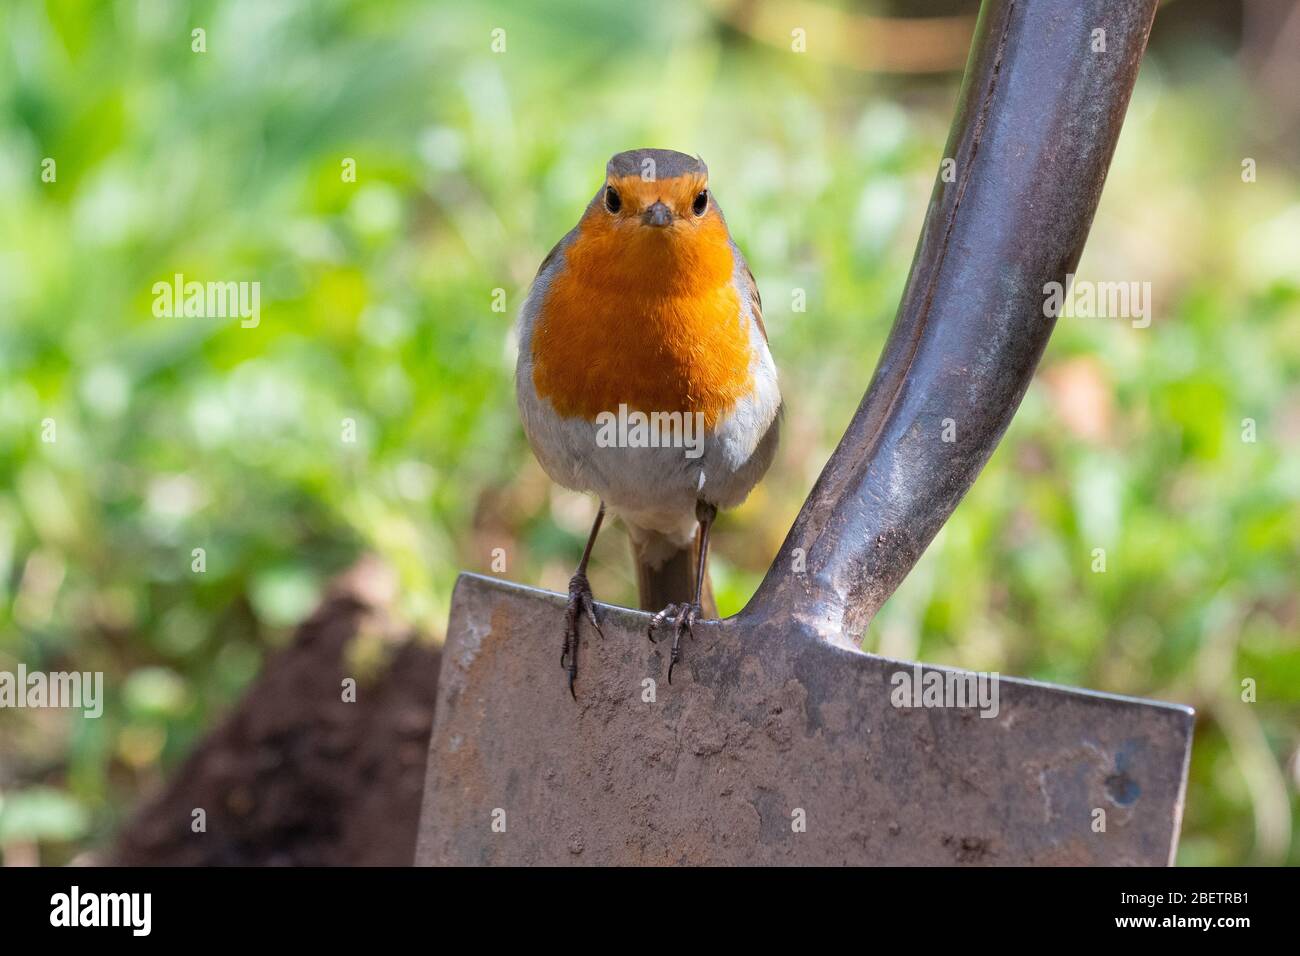 Robin - erithacus rubecula - perching on garden spade - UK Stock Photo